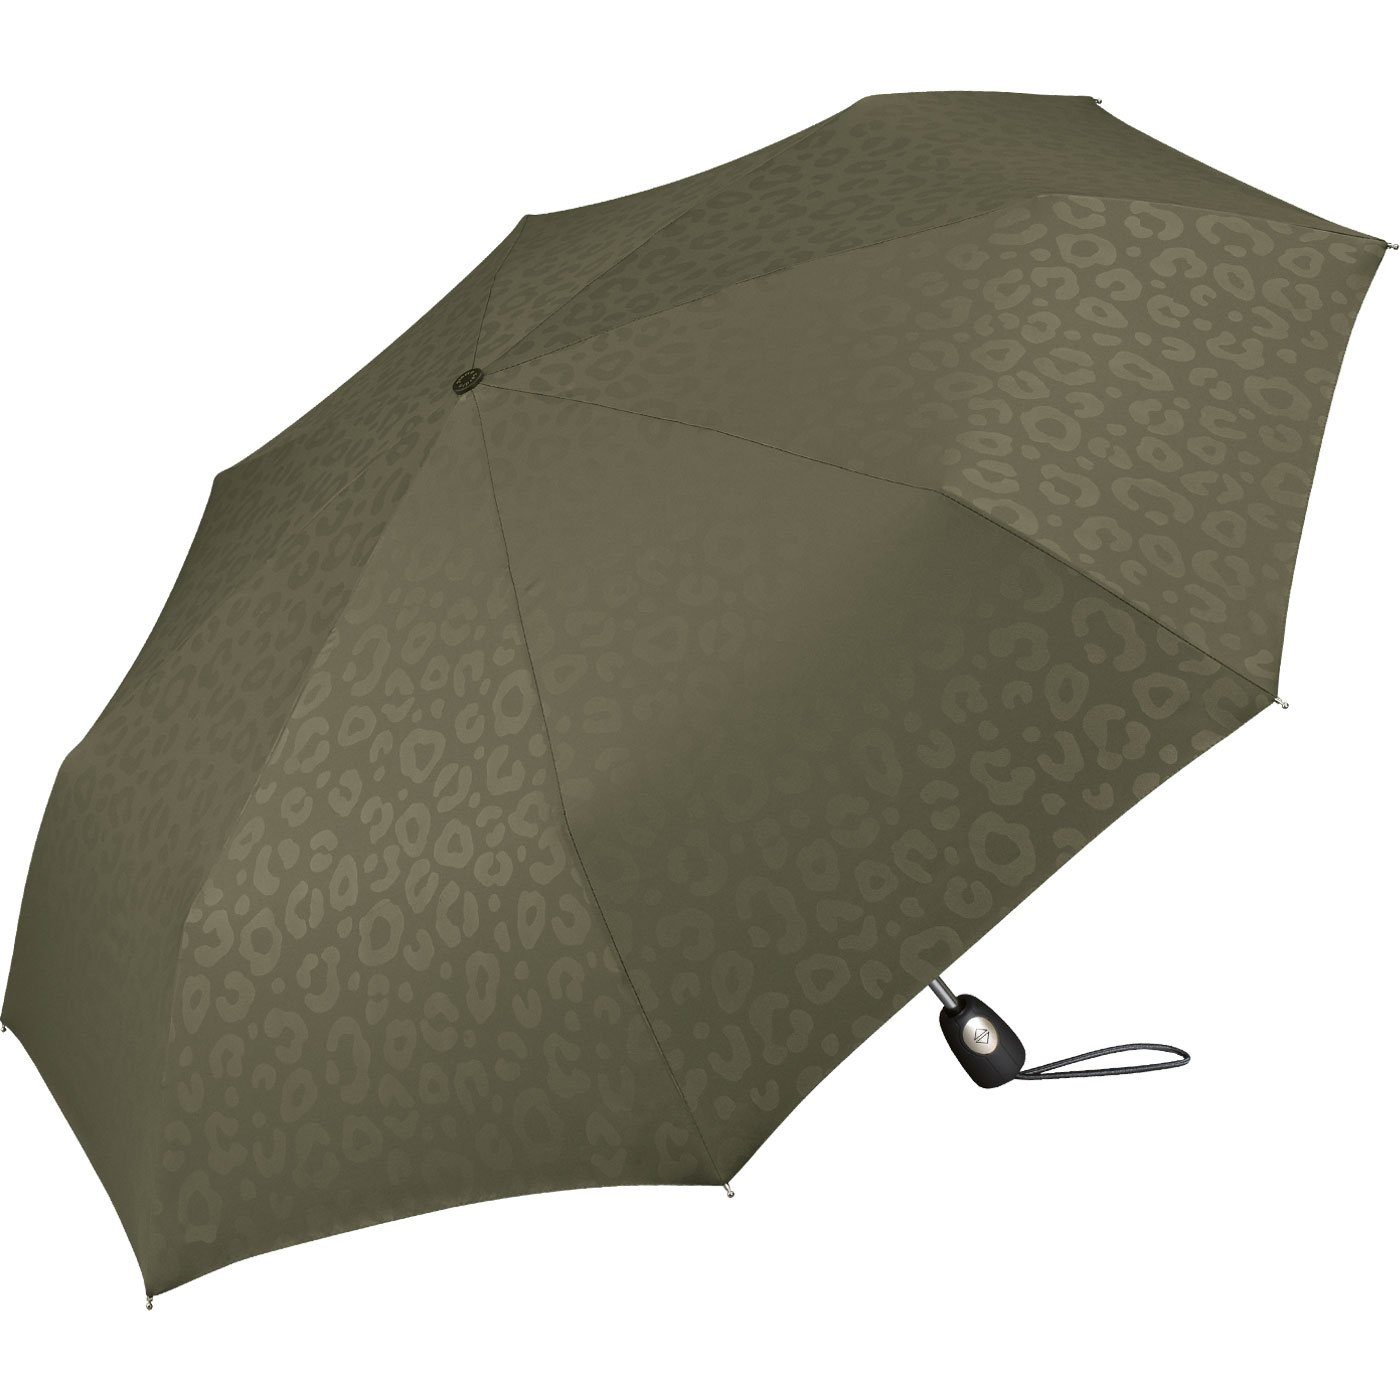 Cardin Auf-Zu-Automatik, bezaubert Damen-Regenschirm Jaguarmuster, Taschenregenschirm schöner olive das Pierre mit ein